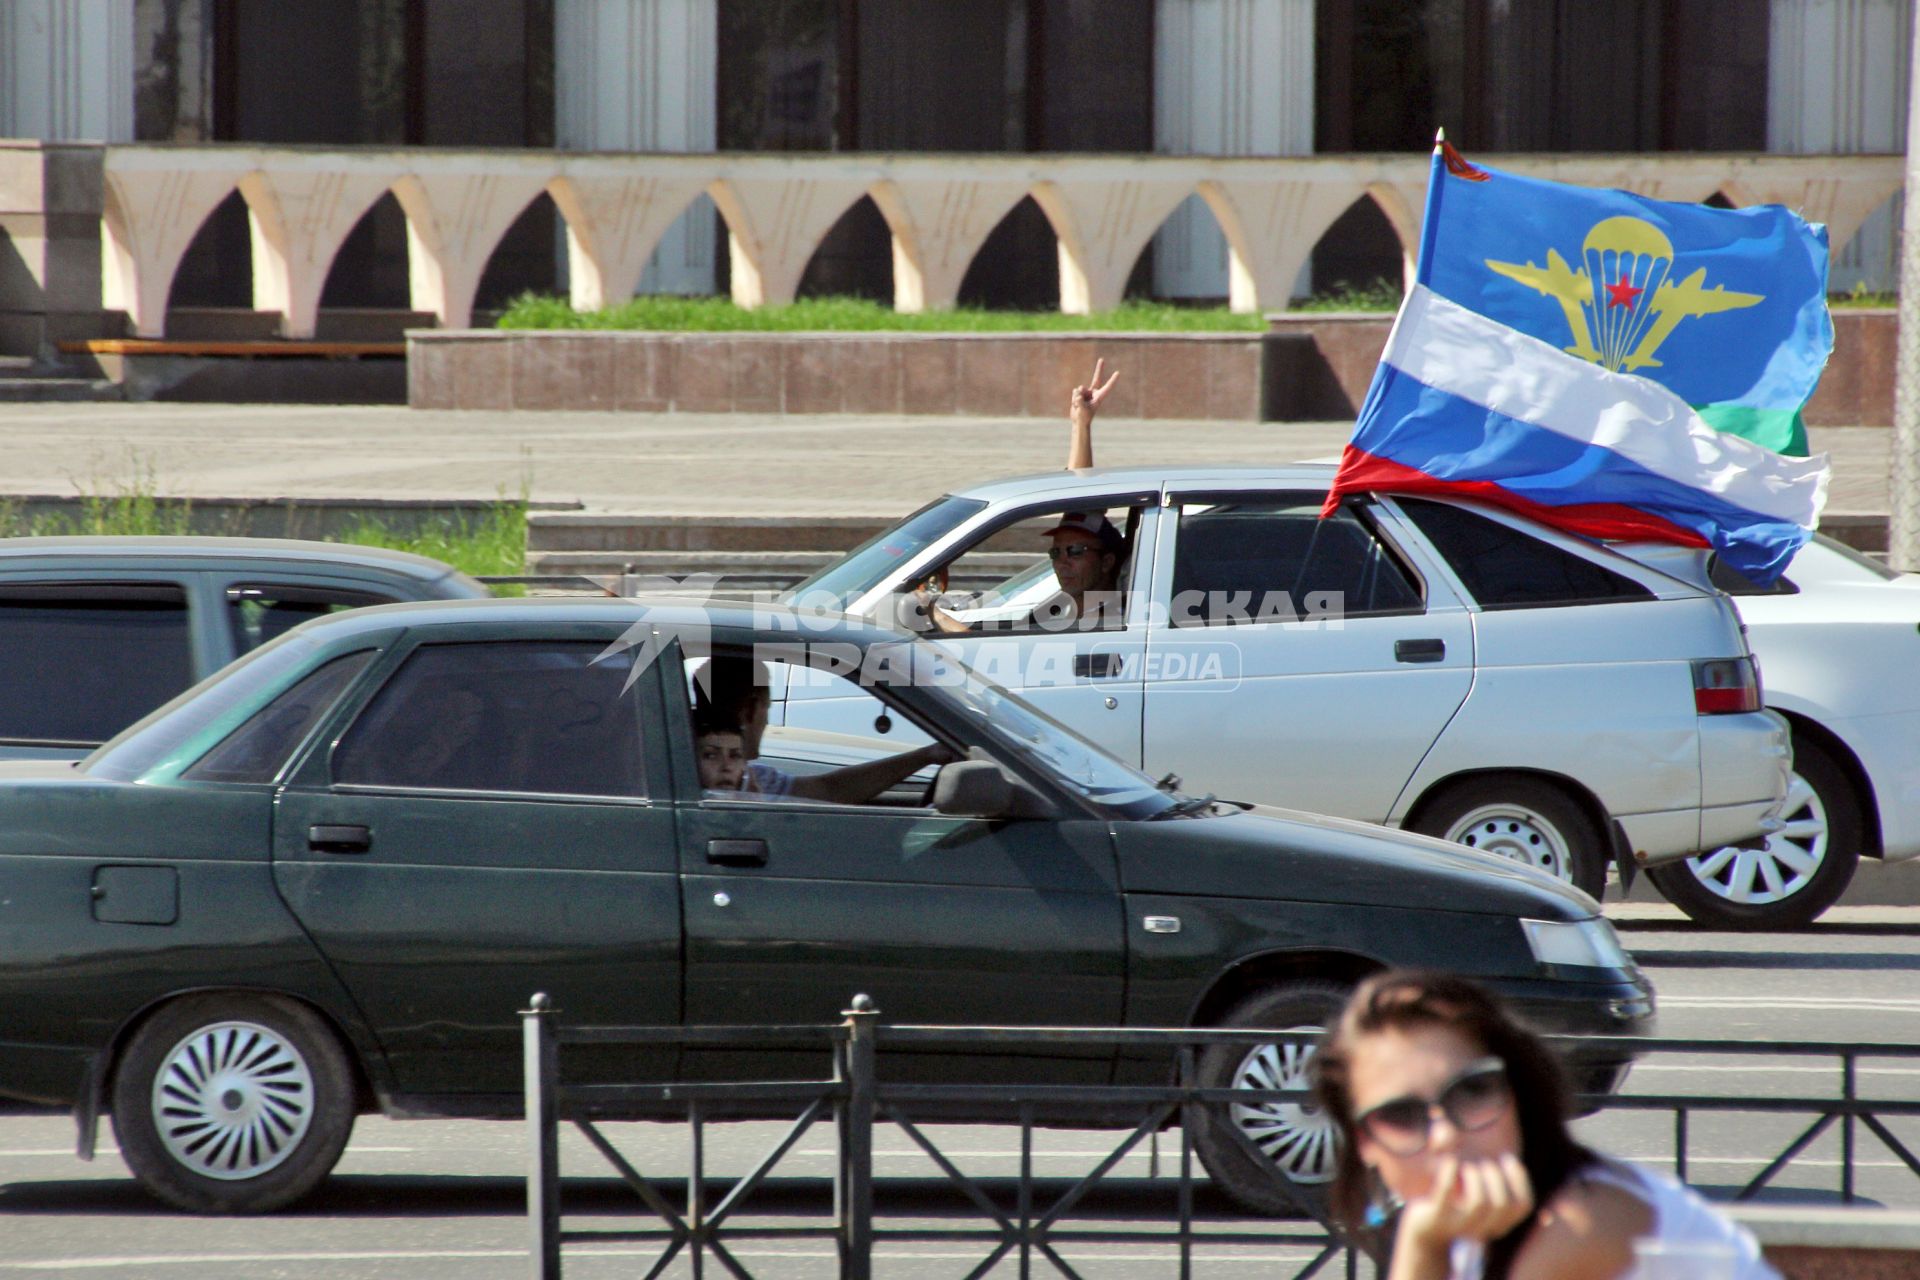 Празднование дня ВДВ в Казани. На снимке: автомобиль с флагами России и воздушно-десантных войск.